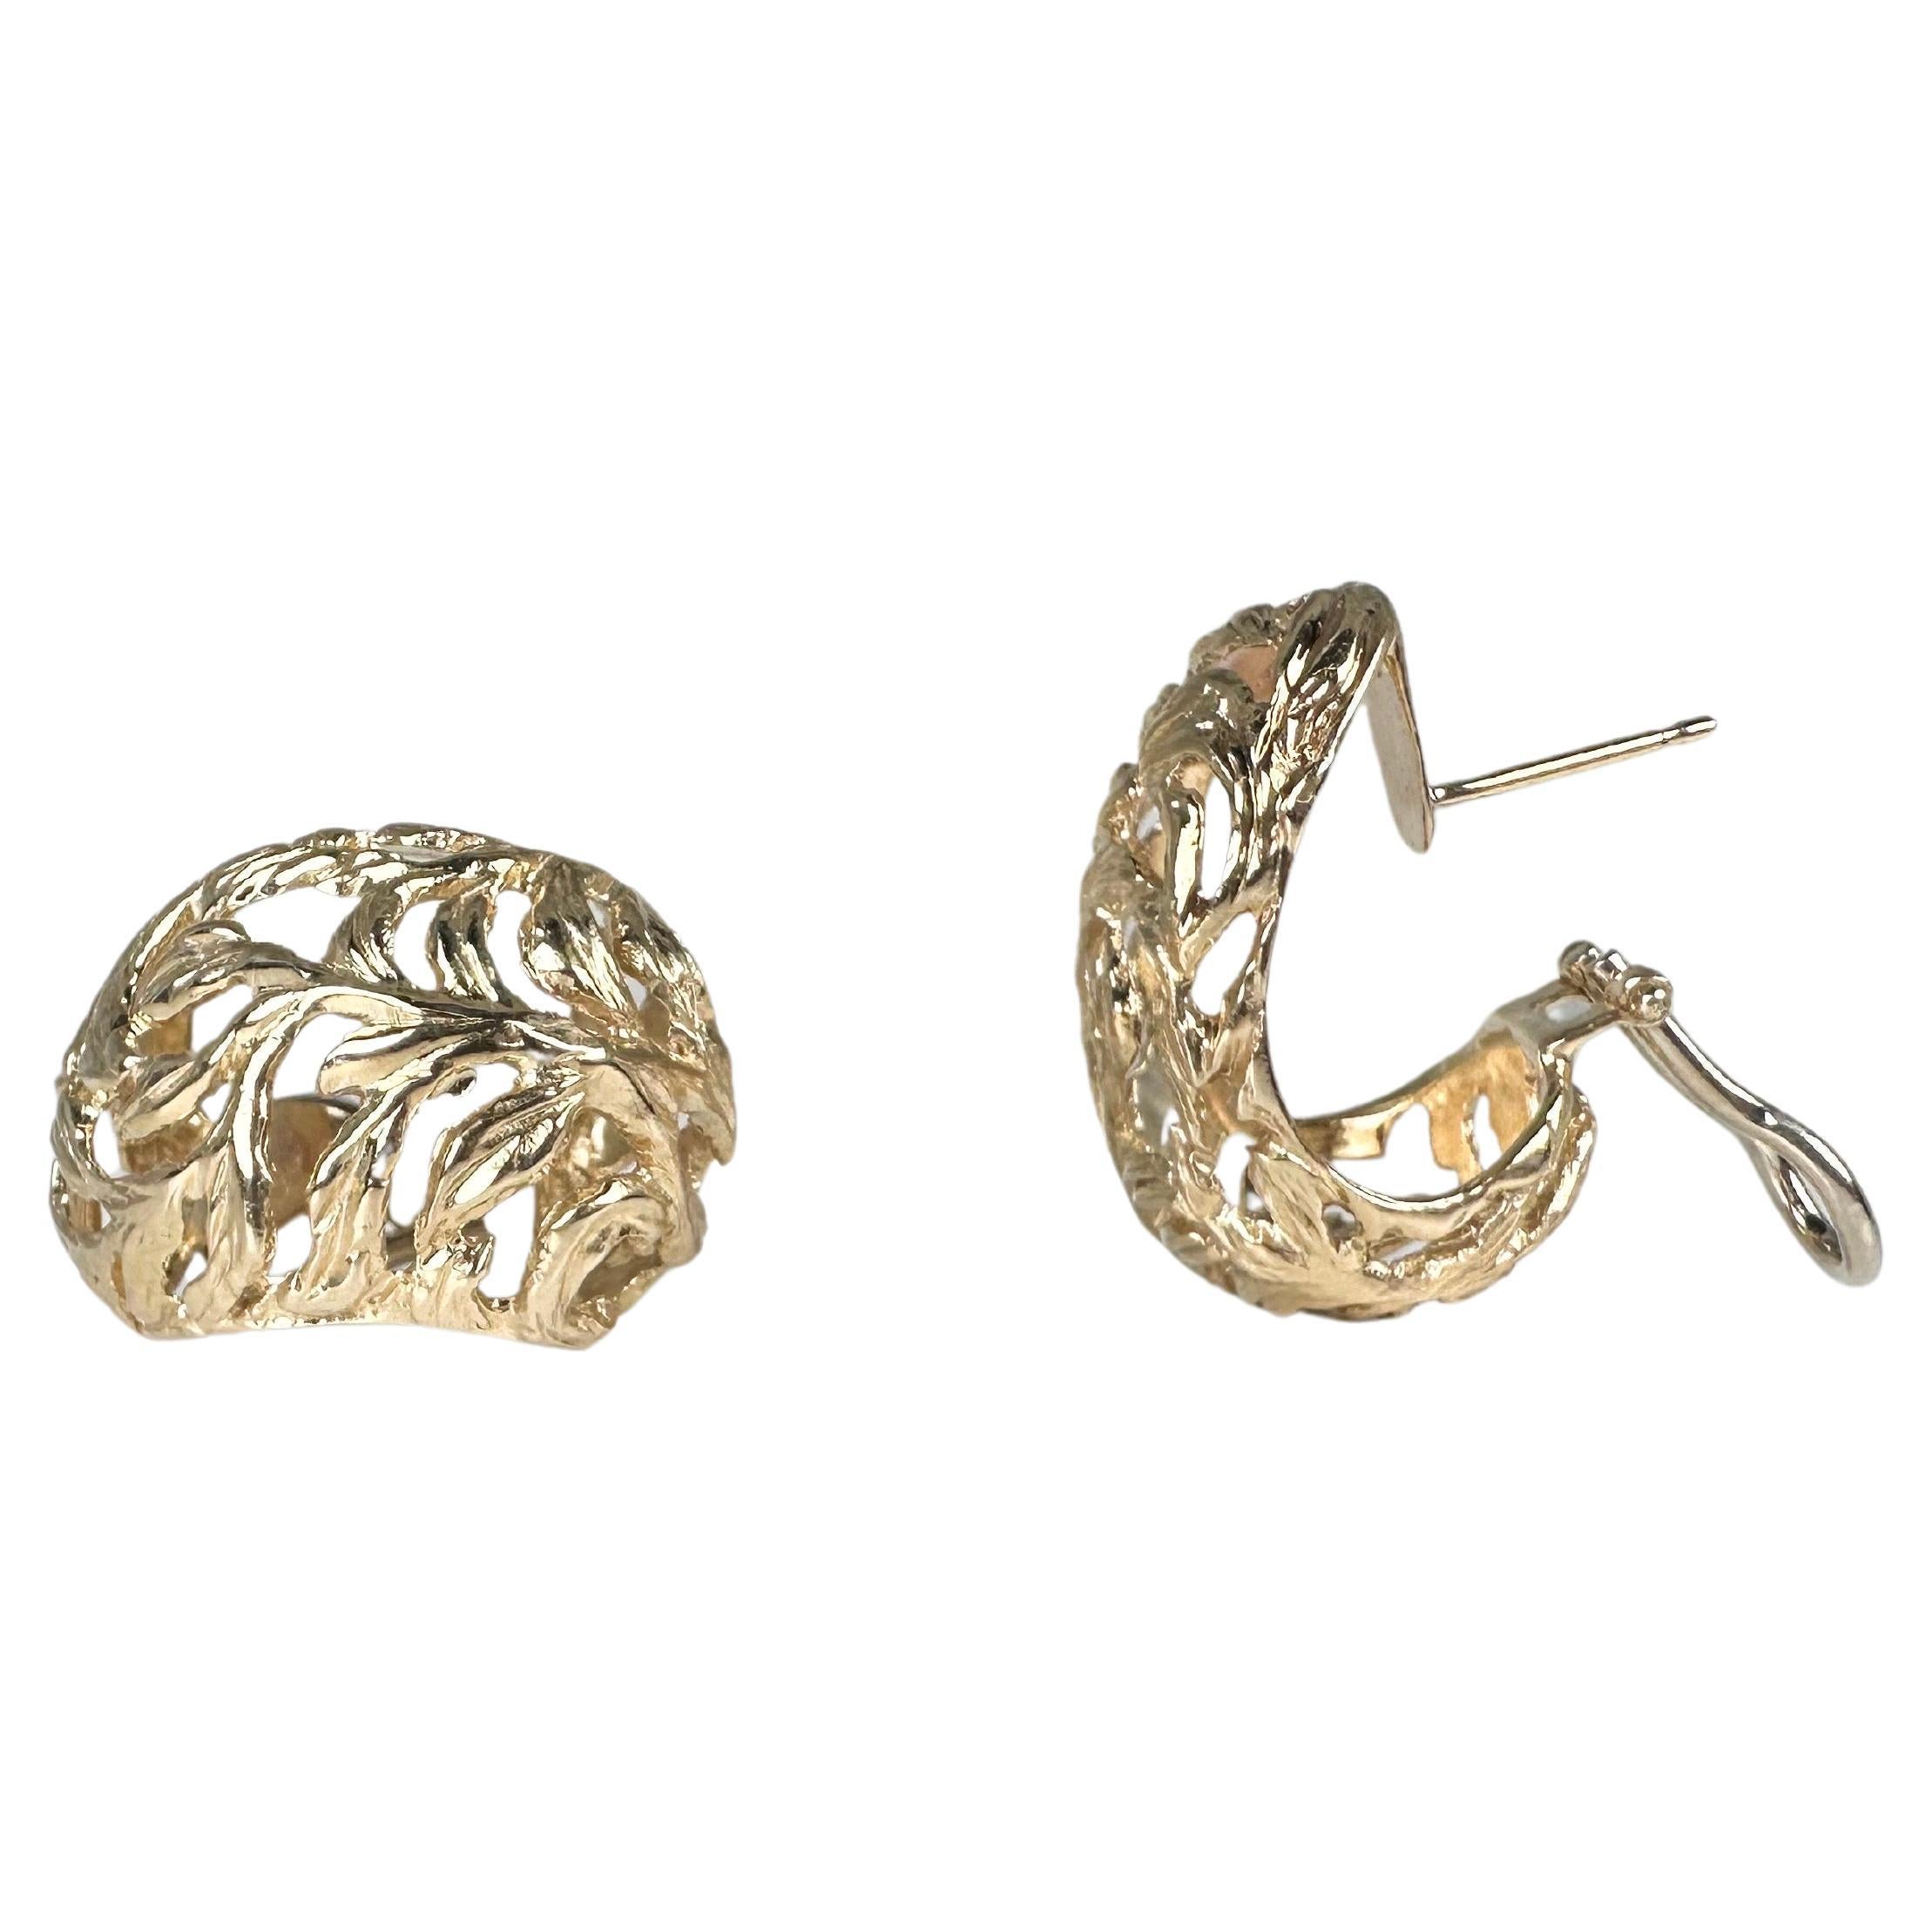 Filigree Omega earrings 14KT gold vintage style